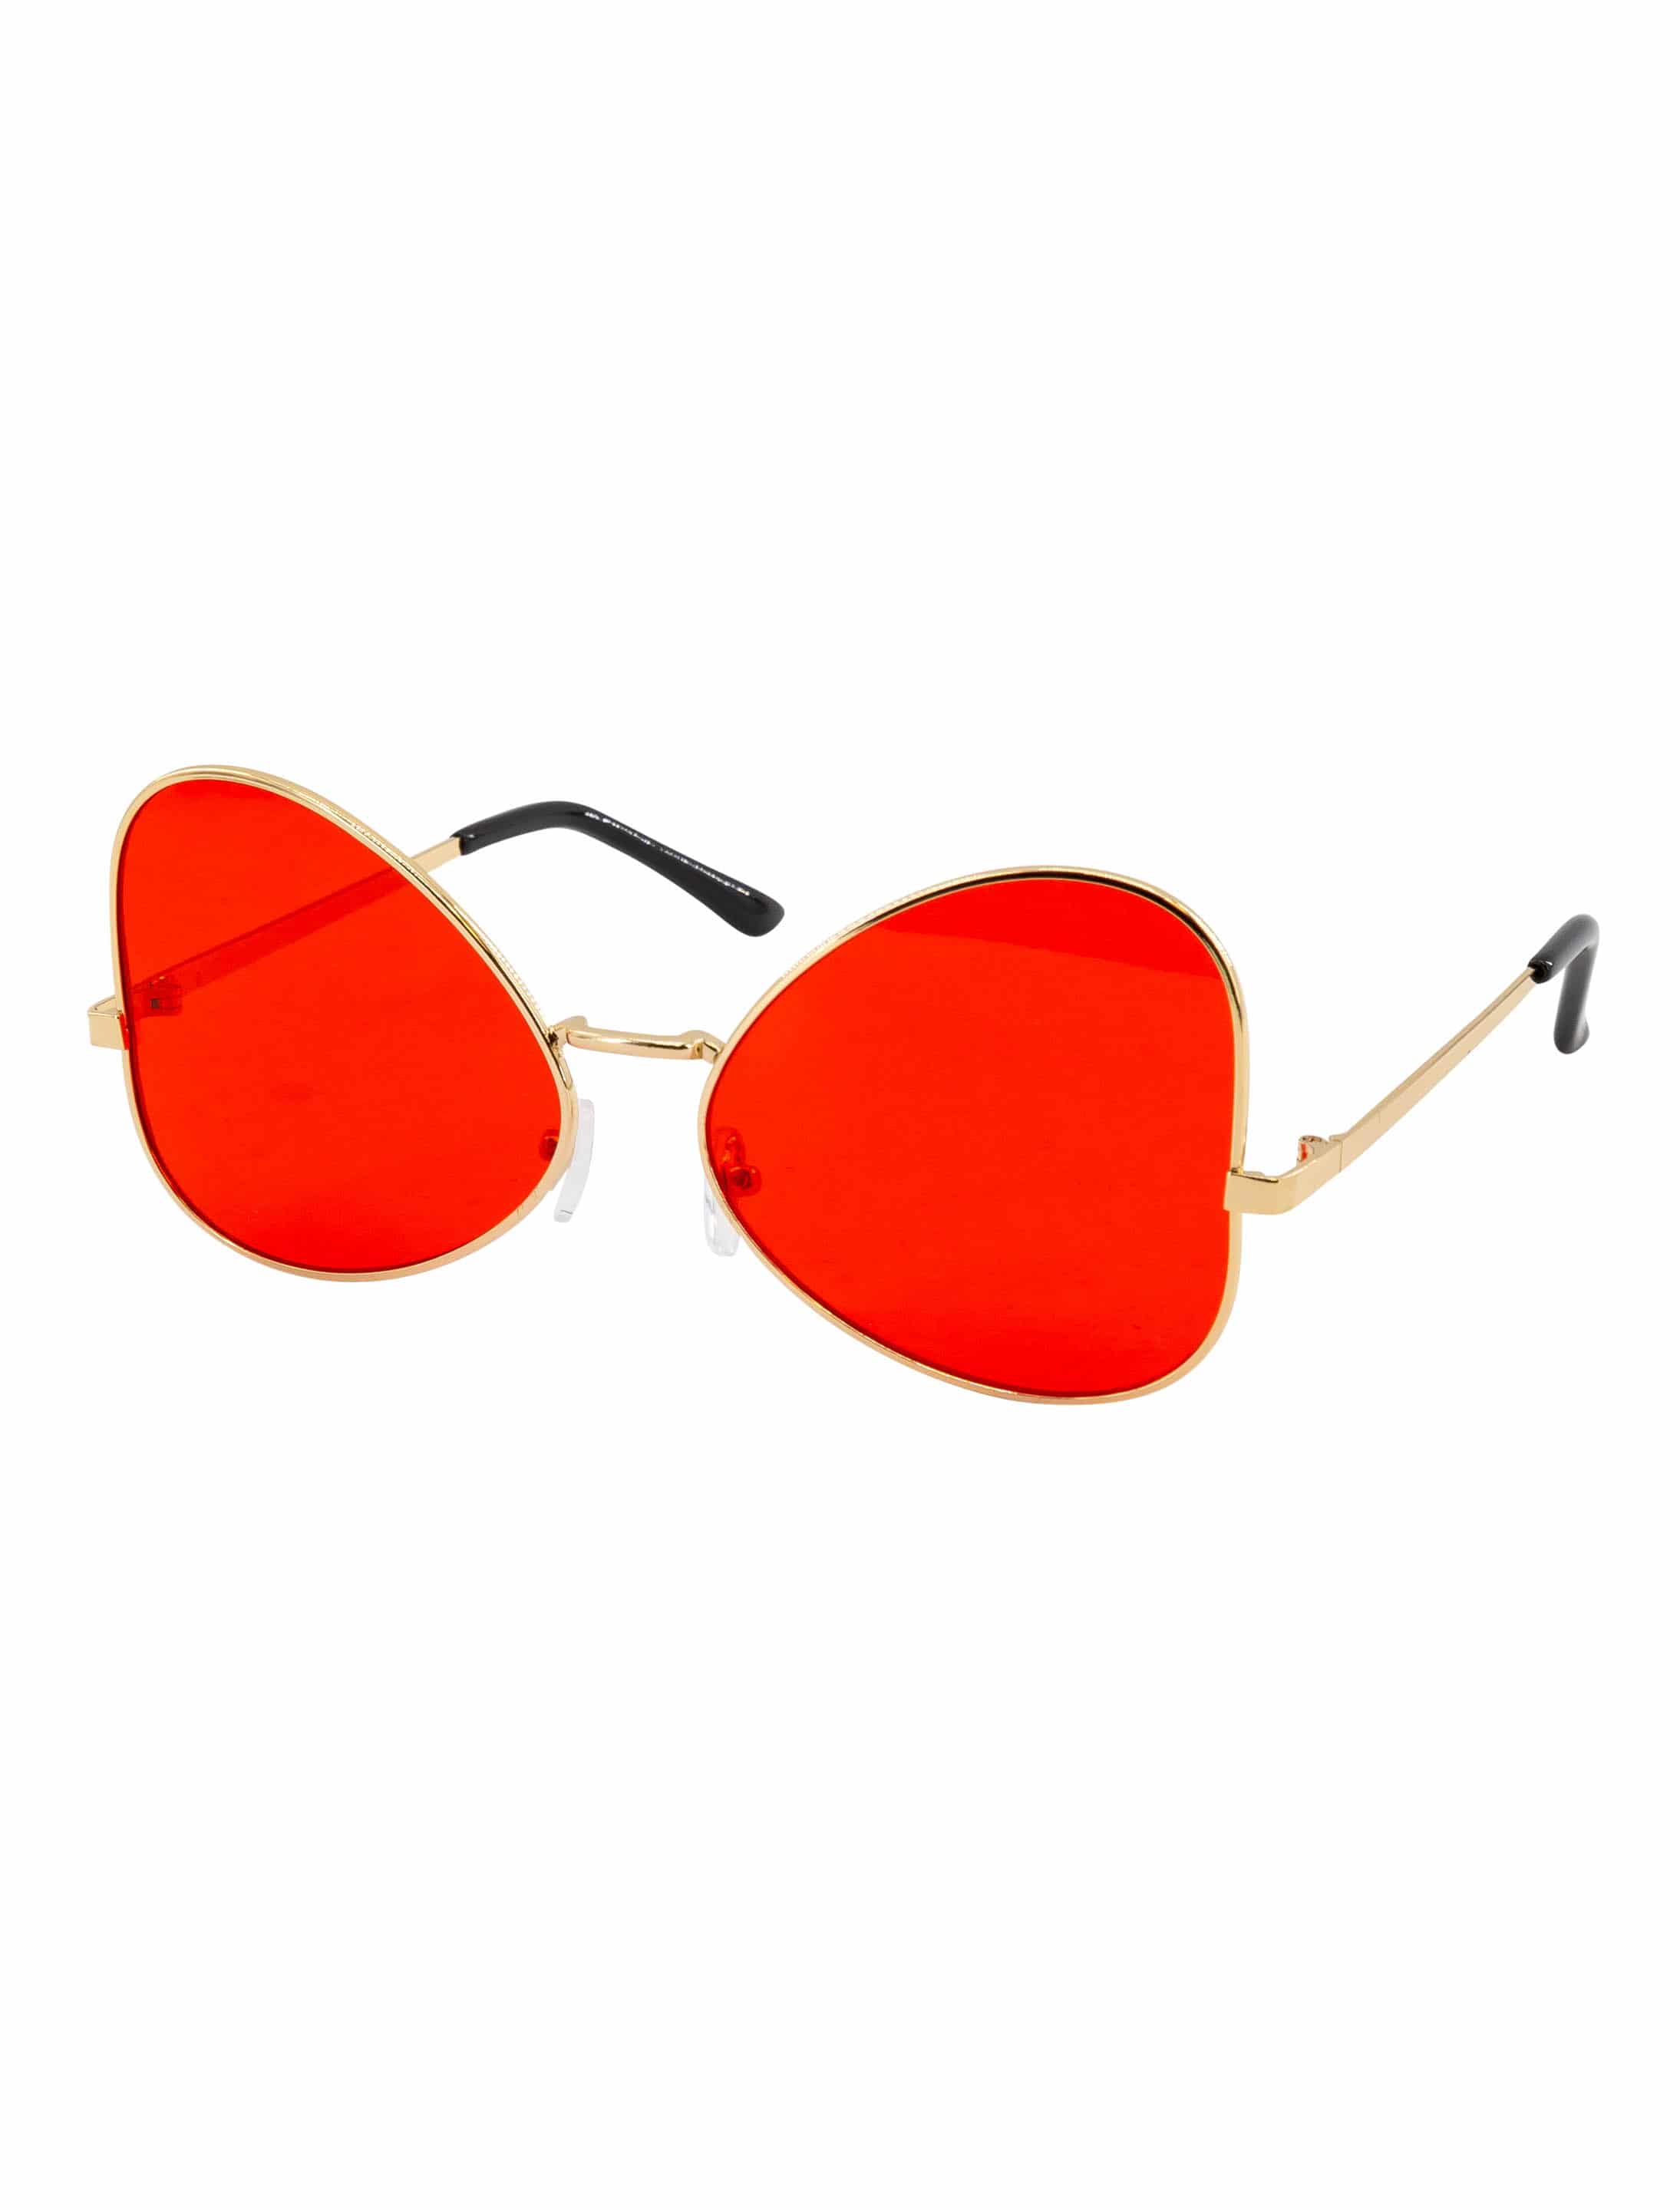 Brille mit roten Gläsern rot/gold